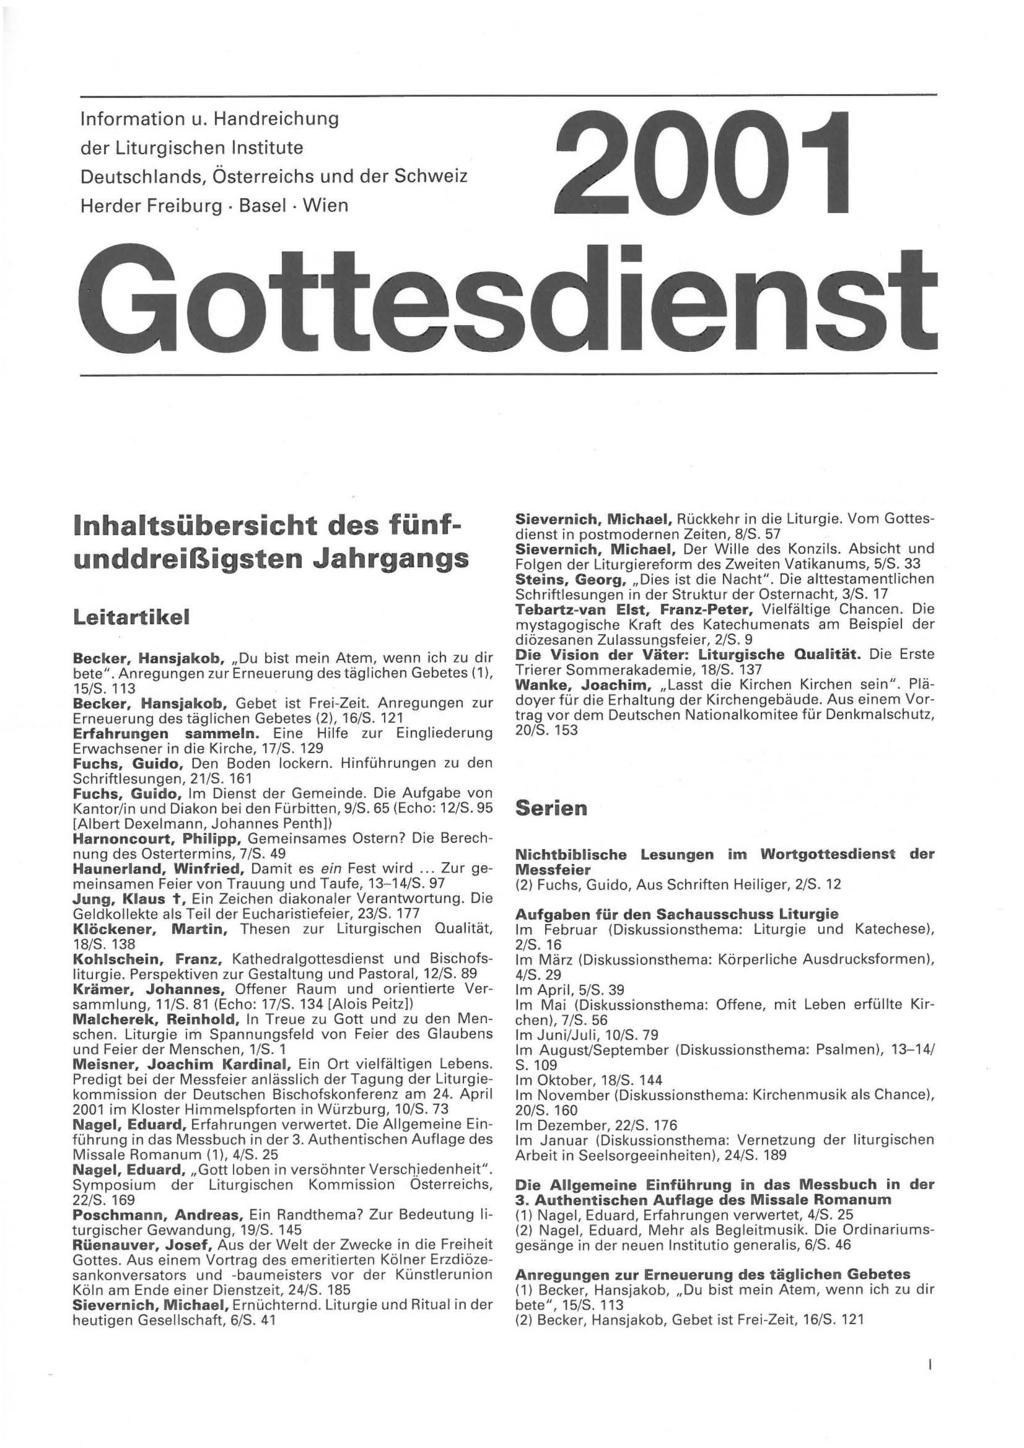 Information u. Handreichung 2001 der Liturgischen Institute Deutschlands, Österreichs und der Schweiz Herder Freiburg.